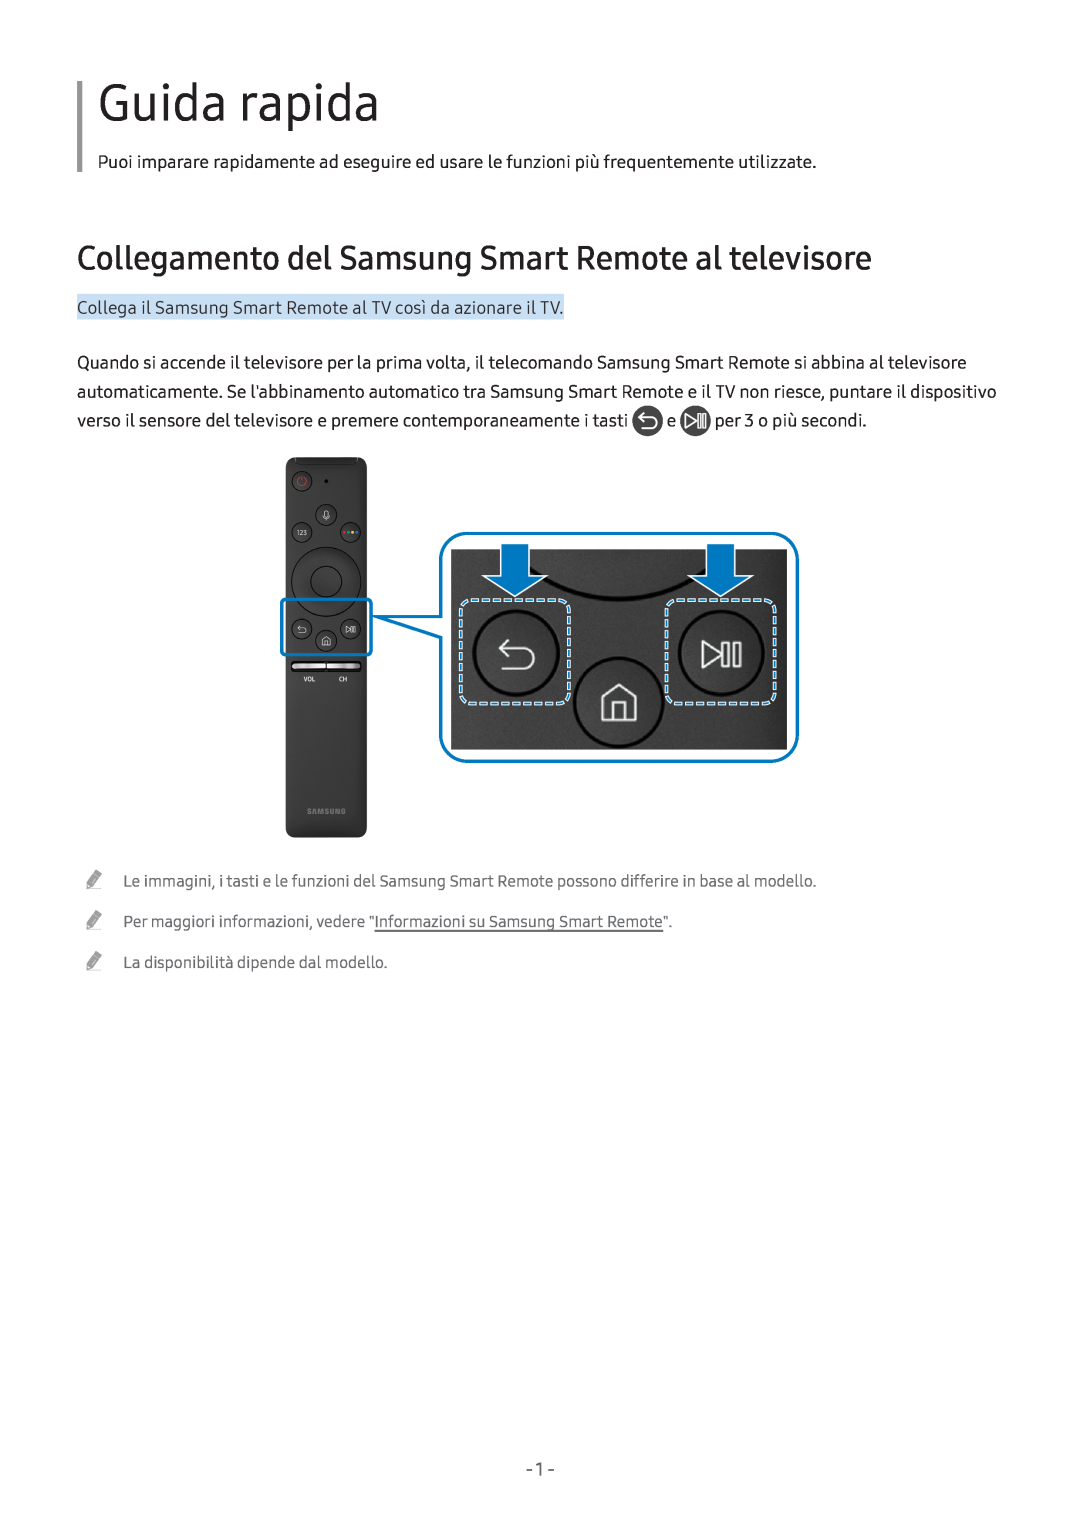 Samsung UE49M5570AUXZG, UE55M5570AUXZG, UE49M5580AUXZG Guida rapida, Collegamento del Samsung Smart Remote al televisore 